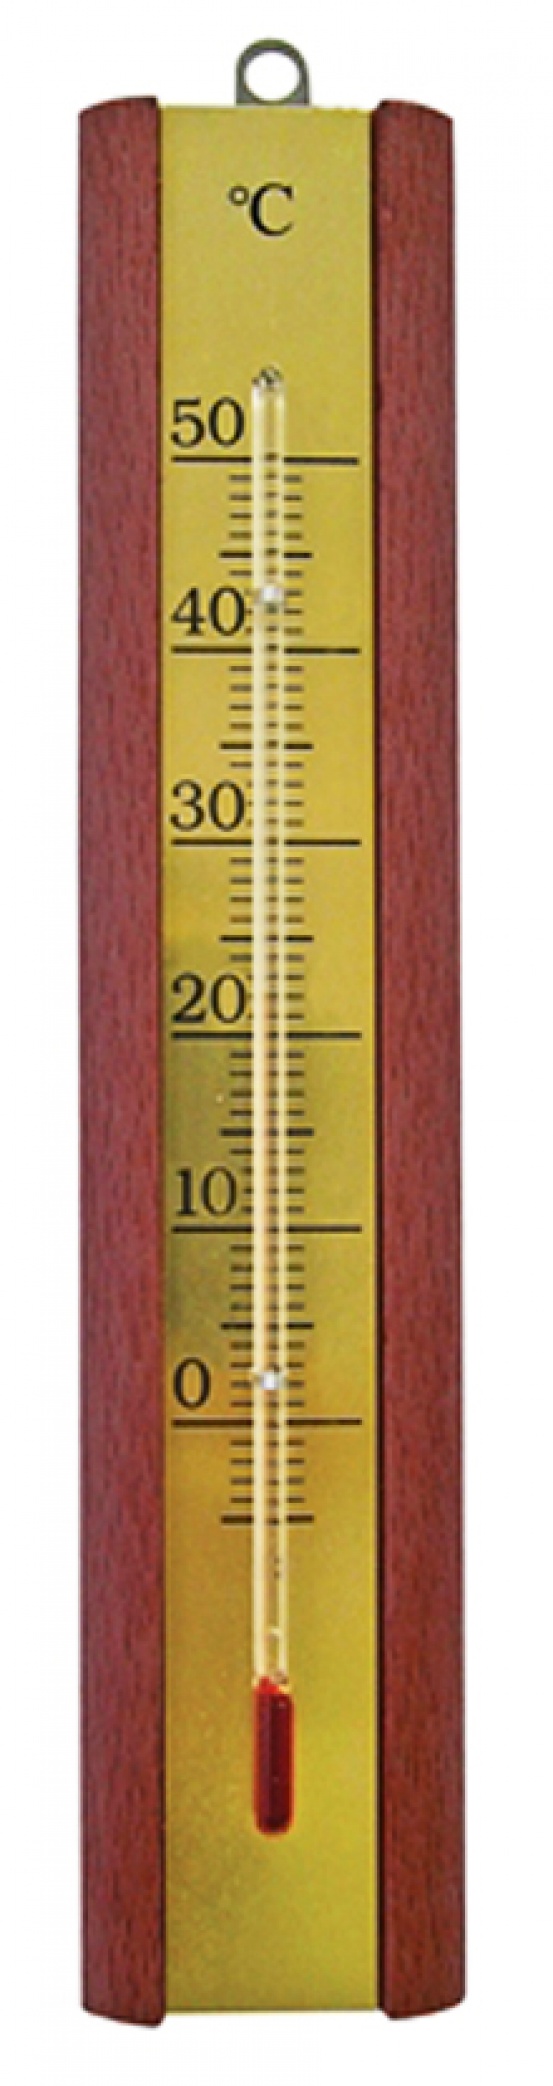 Thermomètre d'intérieur en bois et laiton